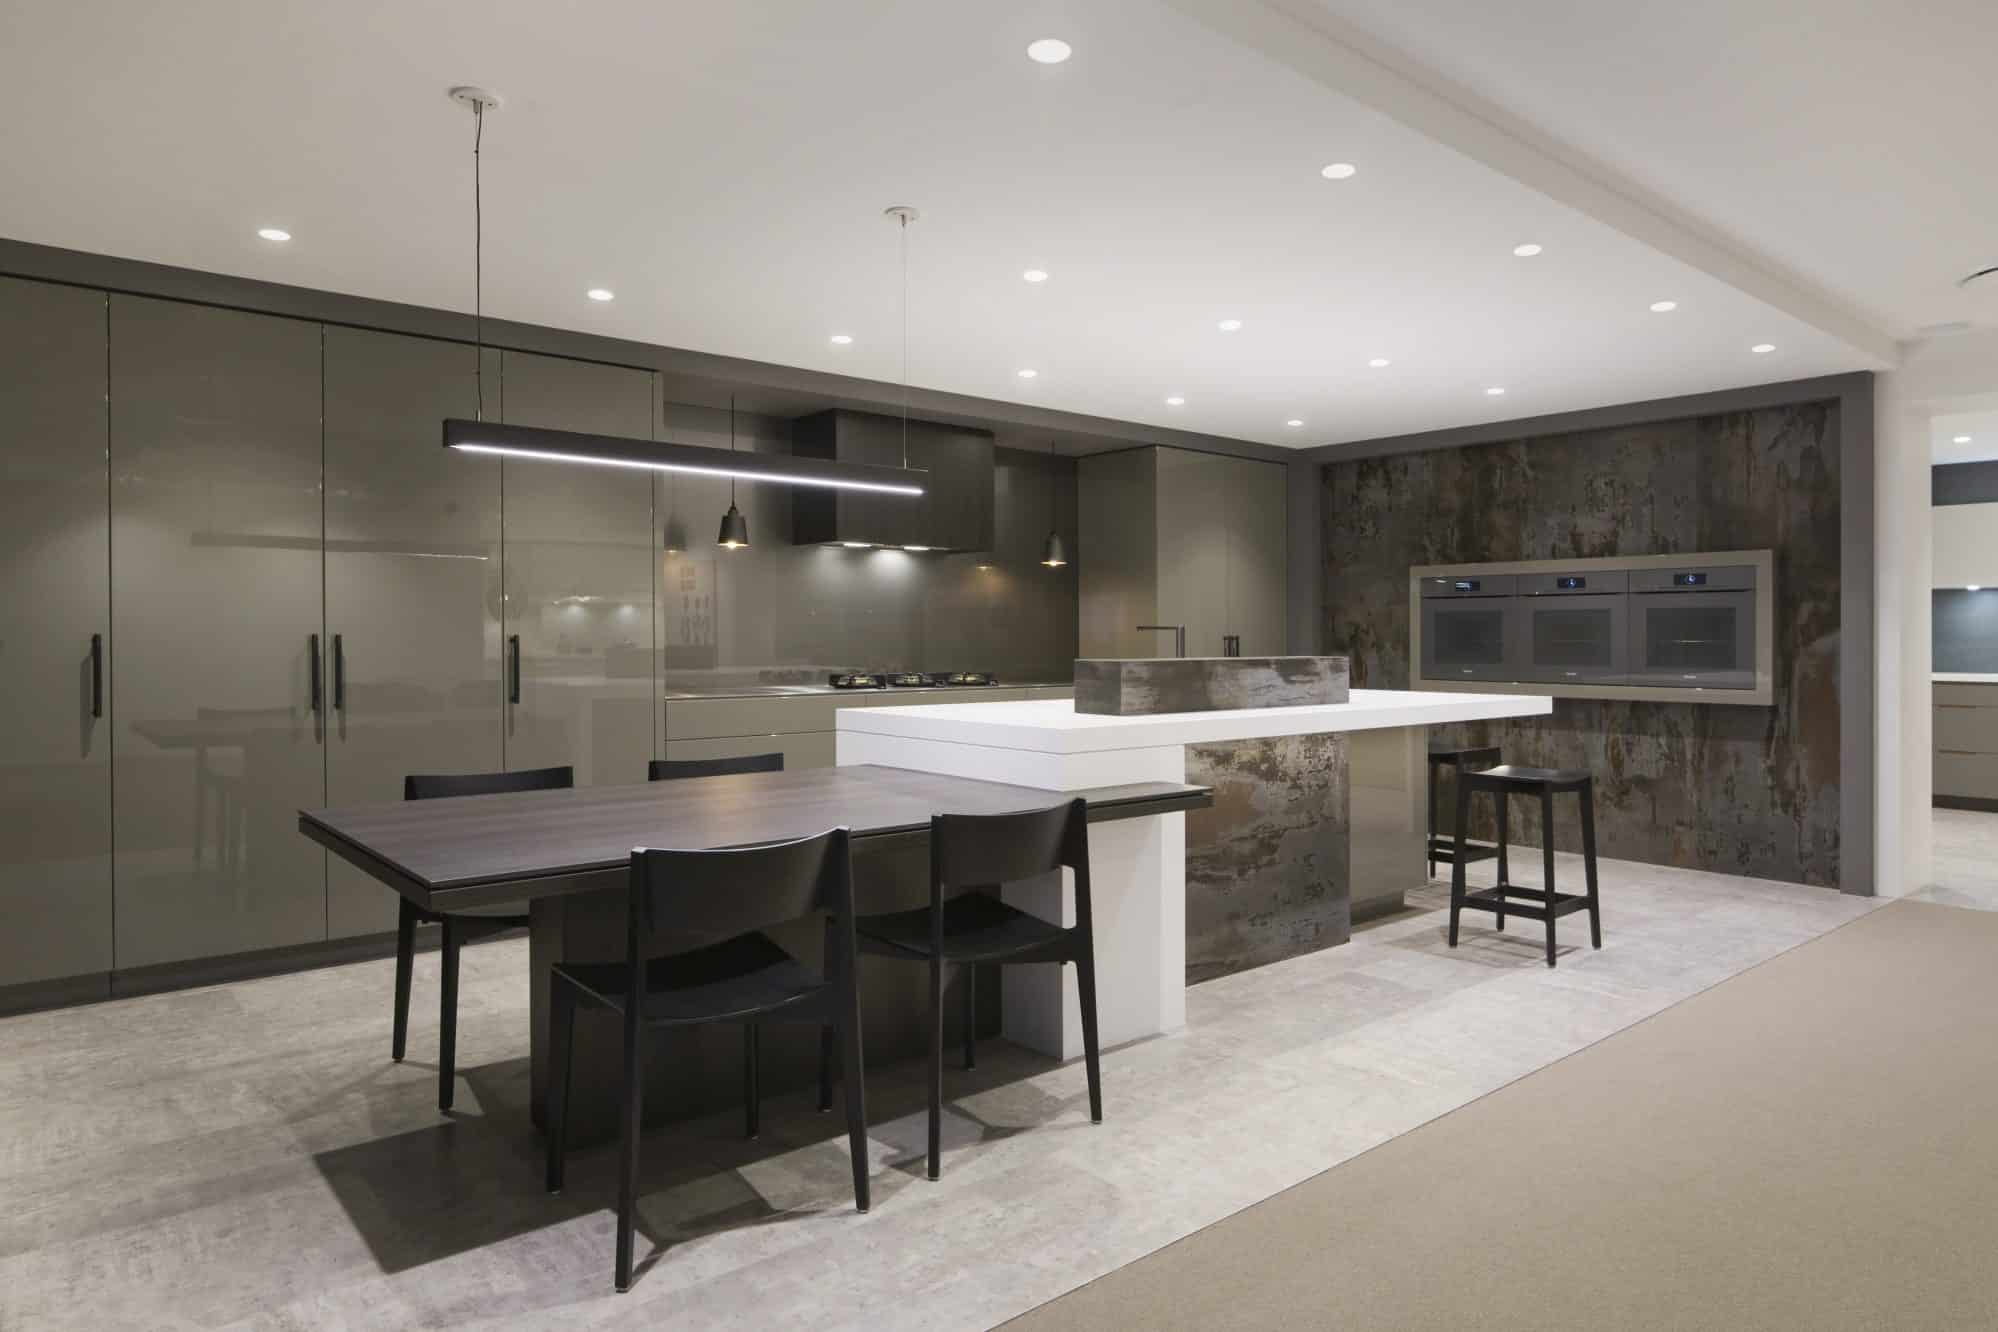 architectural luxury kitchen design showroom in sydney